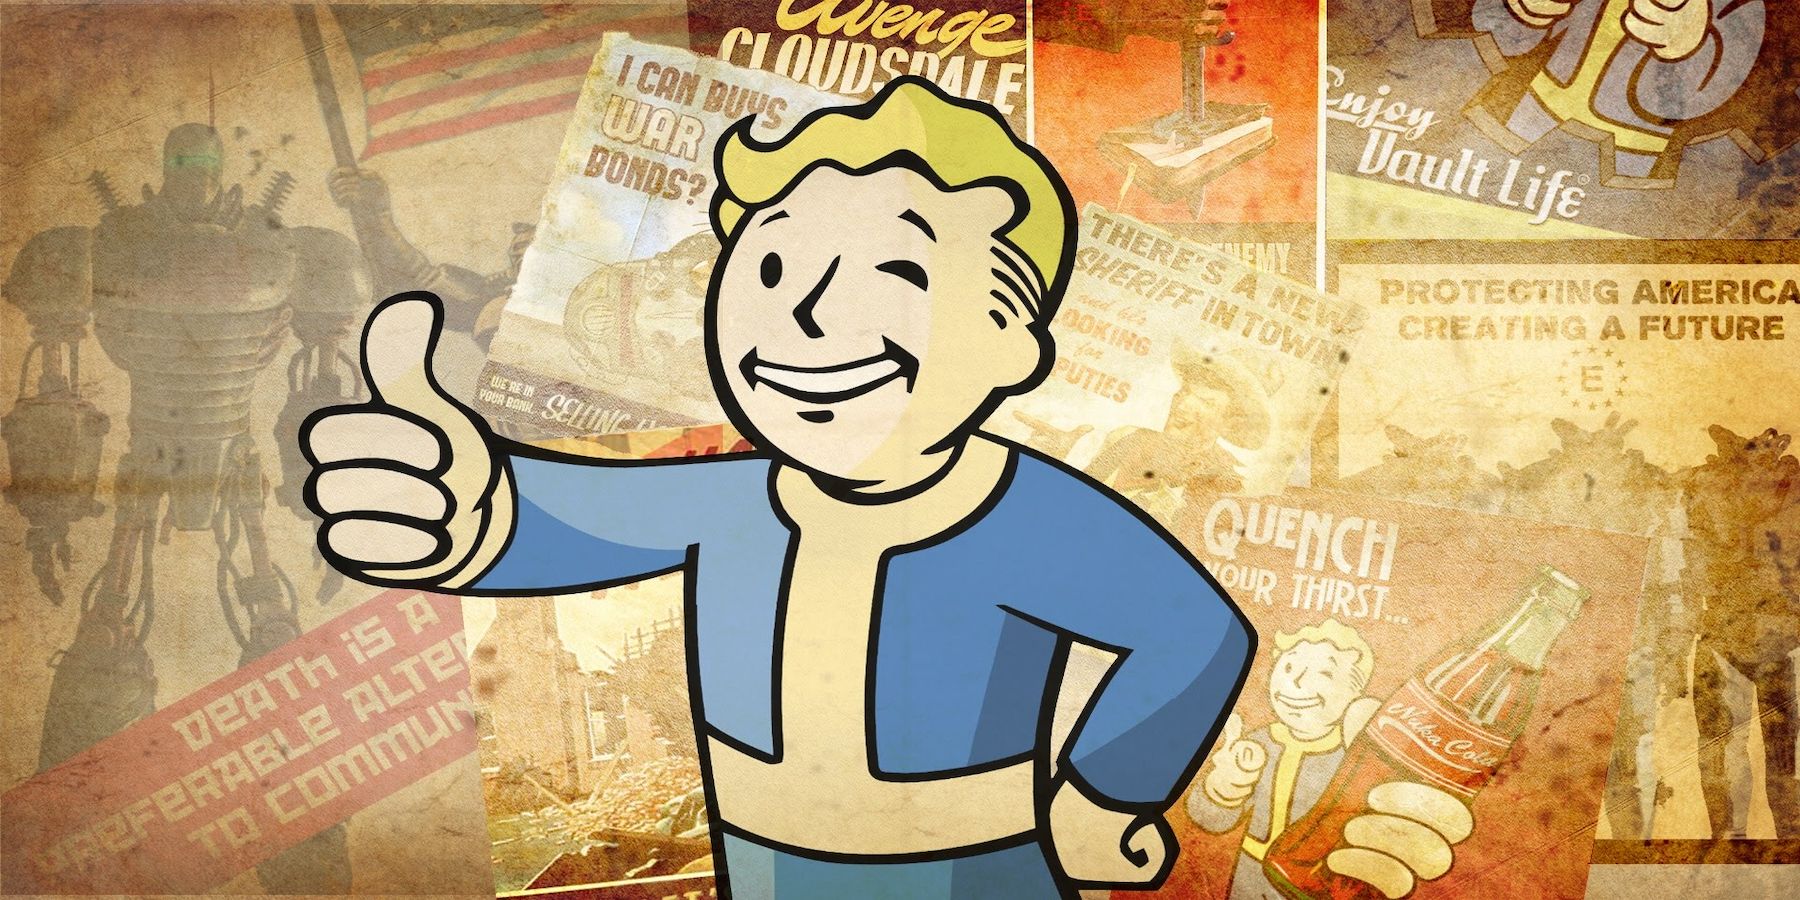 Fallout 4 Vault Boy